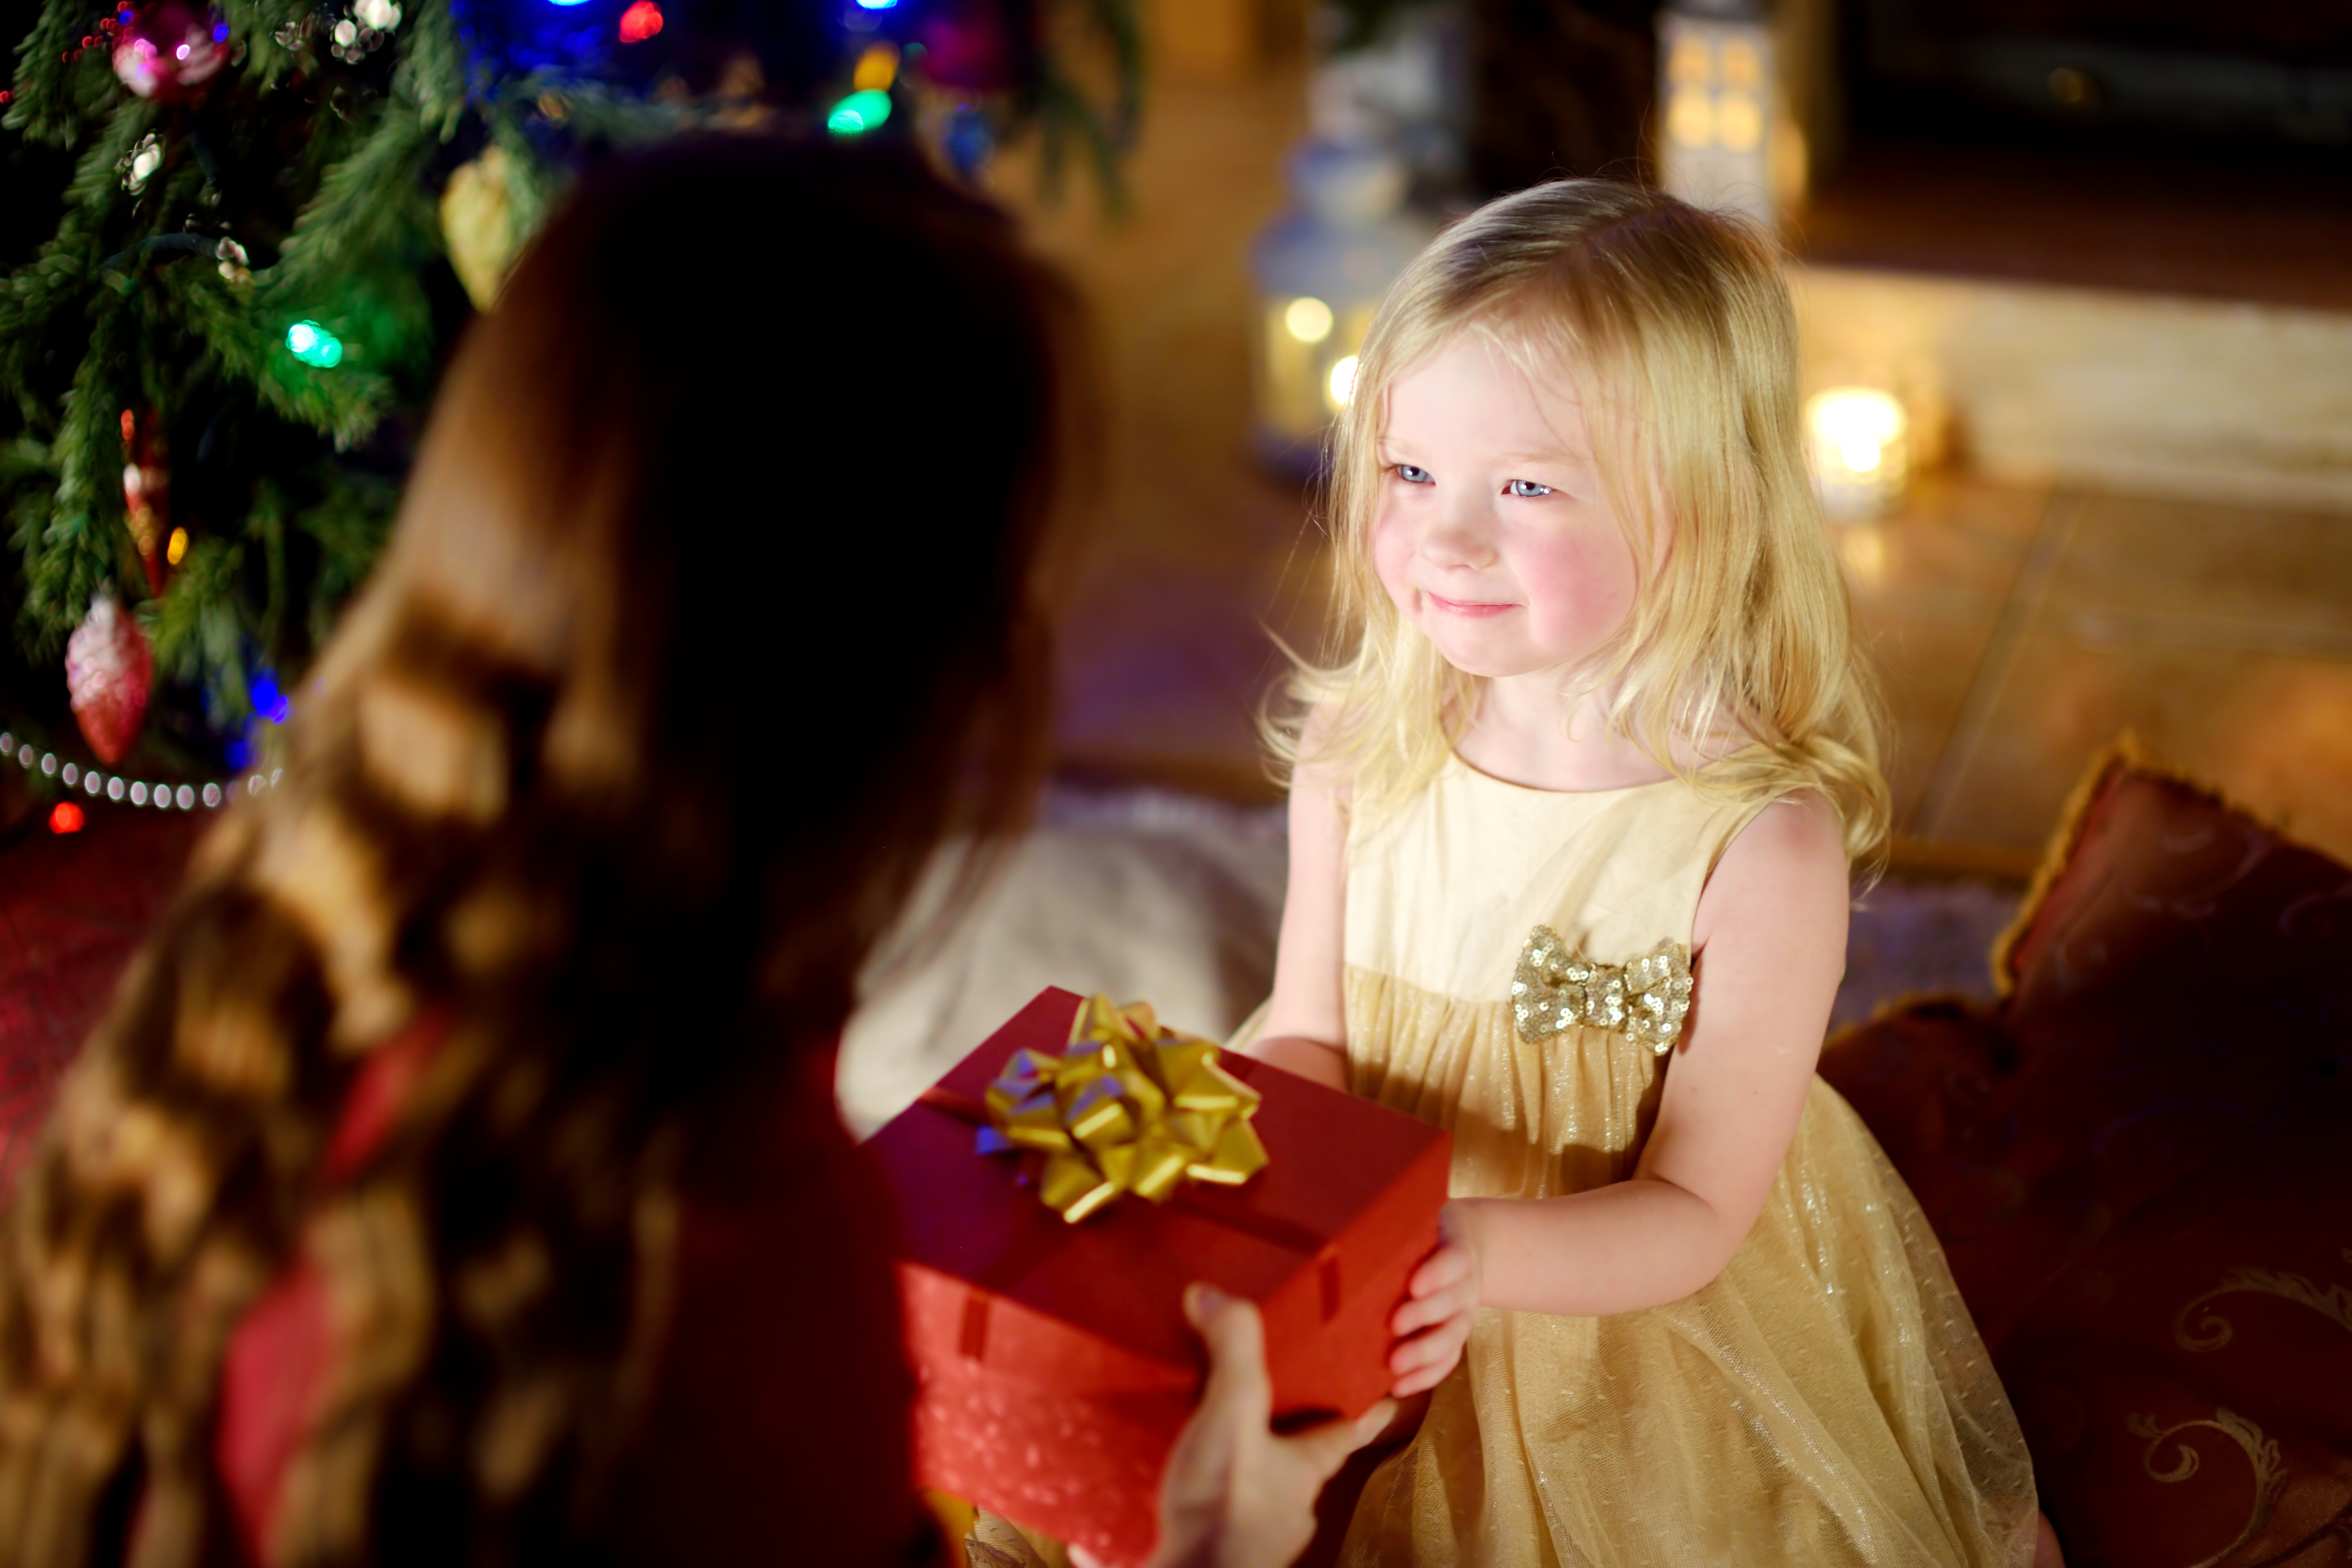 Une petite fille heureuse qui reçoit un cadeau de Noël de sa mère | Source : Getty Images